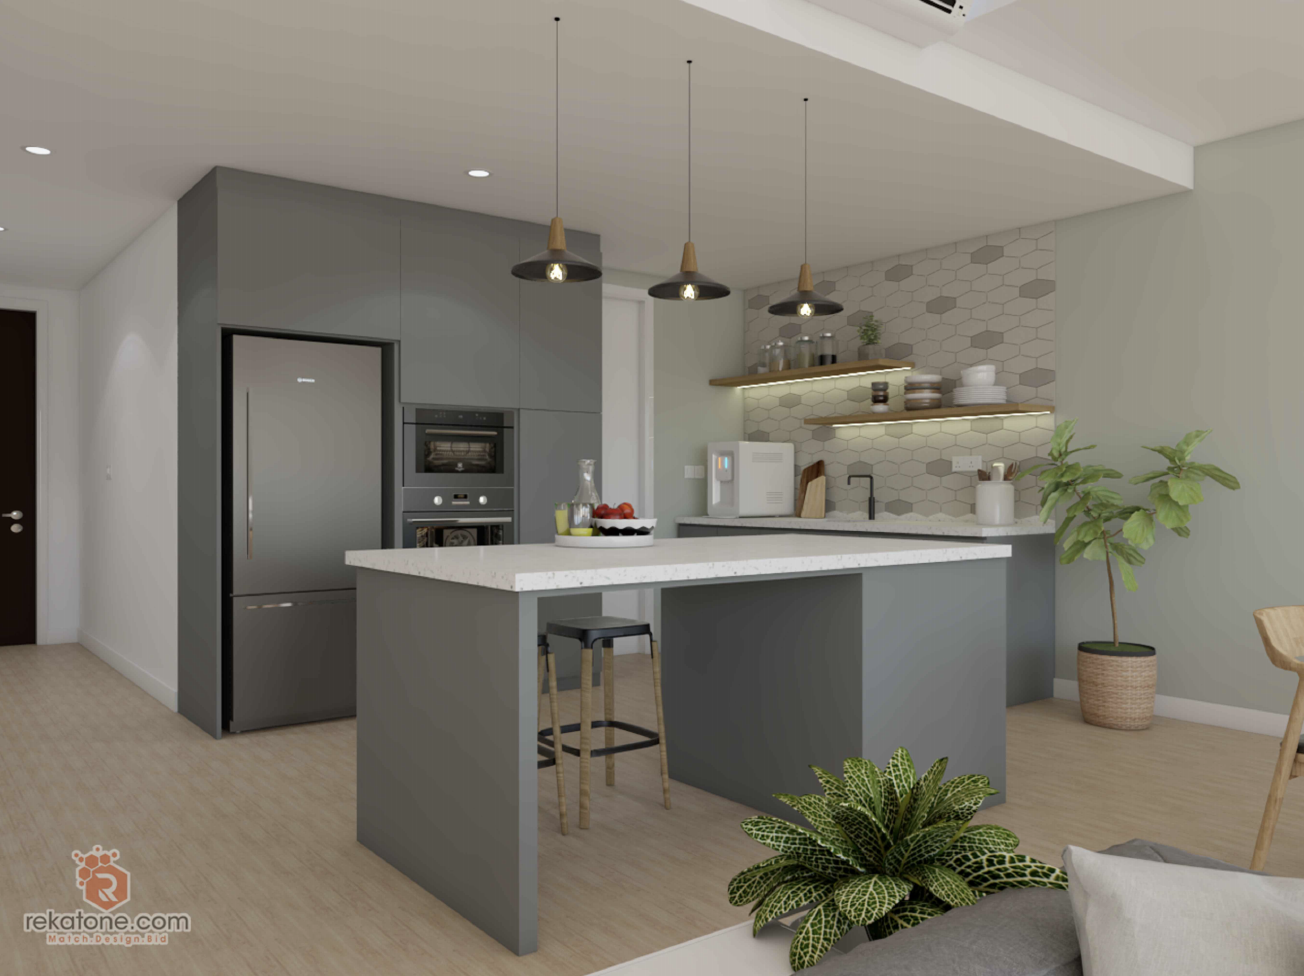 Small Kitchen Design For Condo /Apartment Malaysia 2020 | rekatone.com